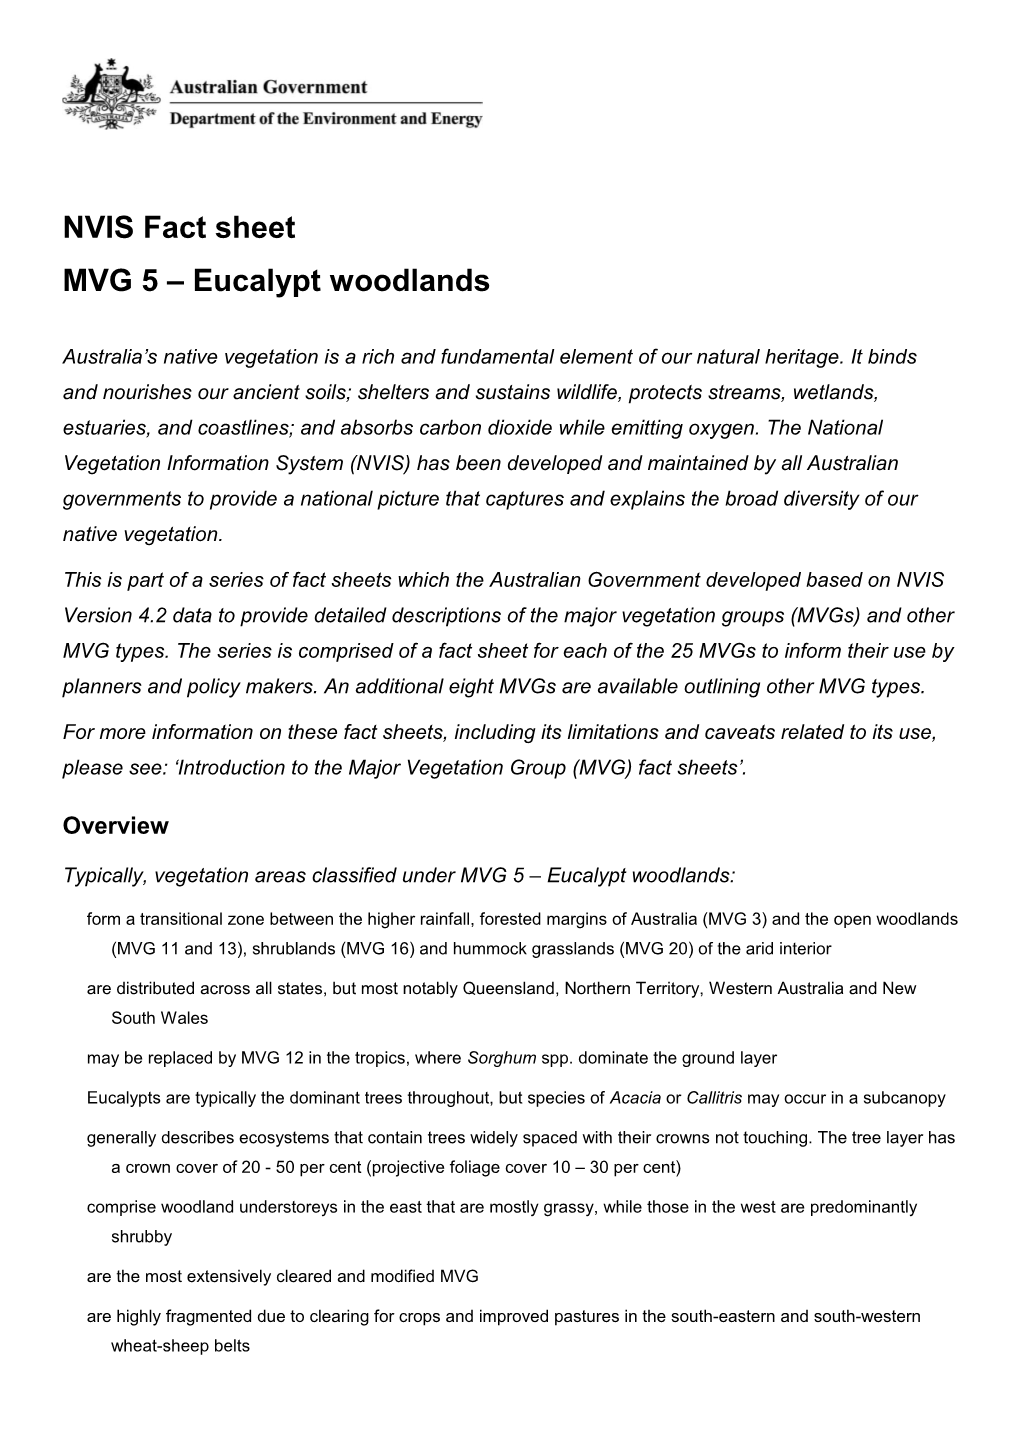 NVIS Fact Sheet MVG 5 Eucalypt Woodlands